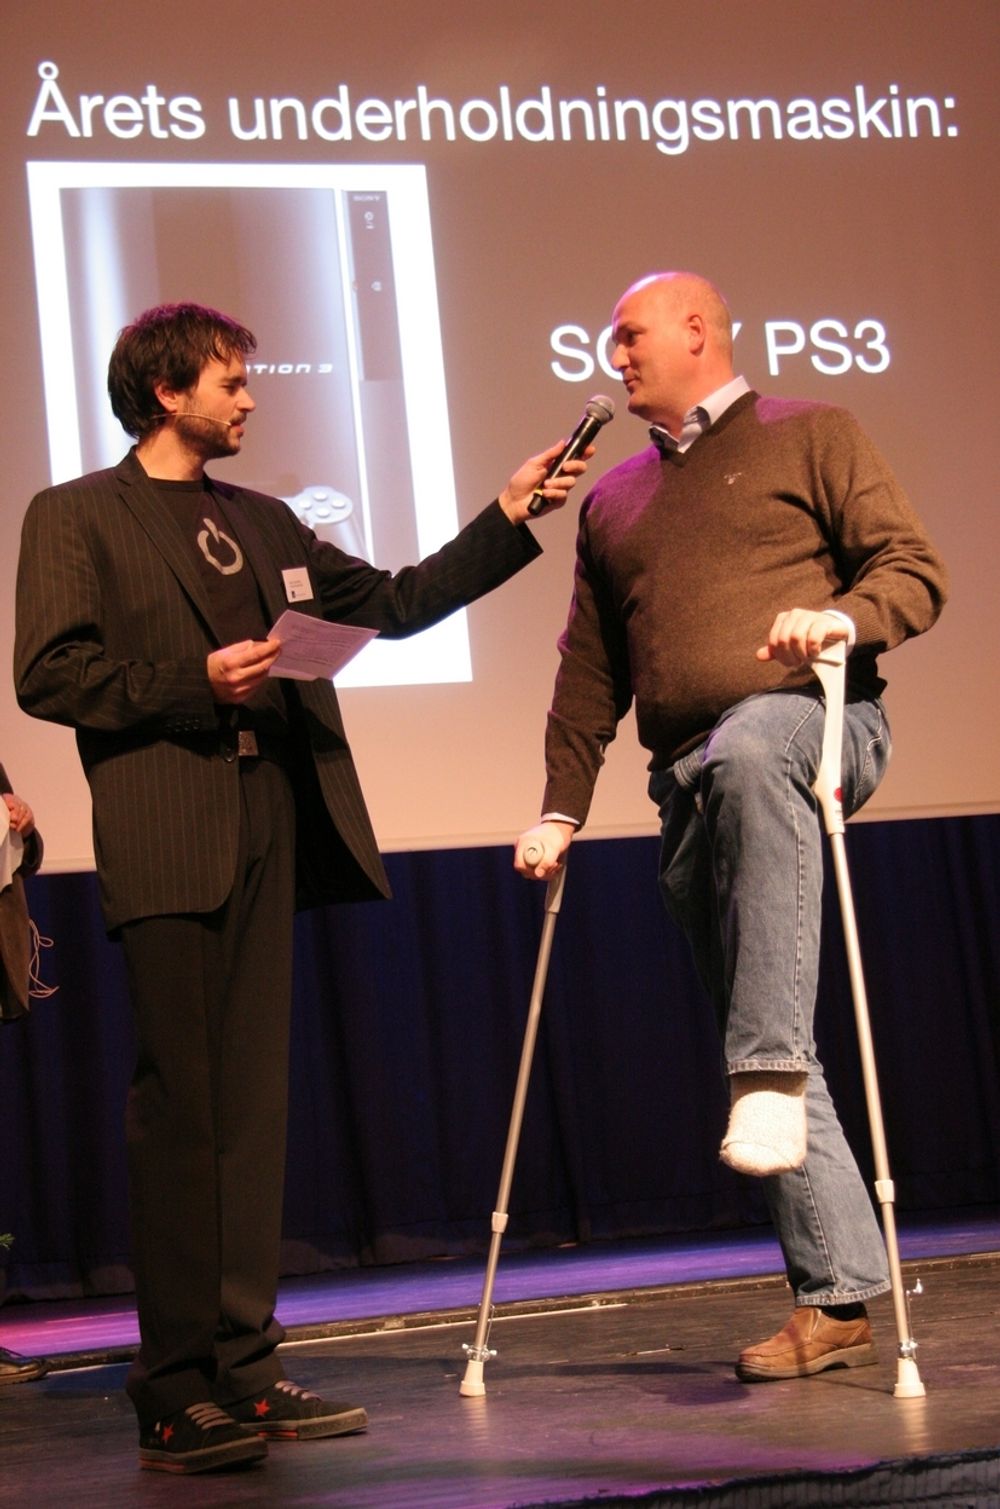 Playstation fikk selvfølgelig blankett for sin innsats med Playstation 3. det ødelagte benet har ingenting med spilling å gjøre, hevdet prismottageren.